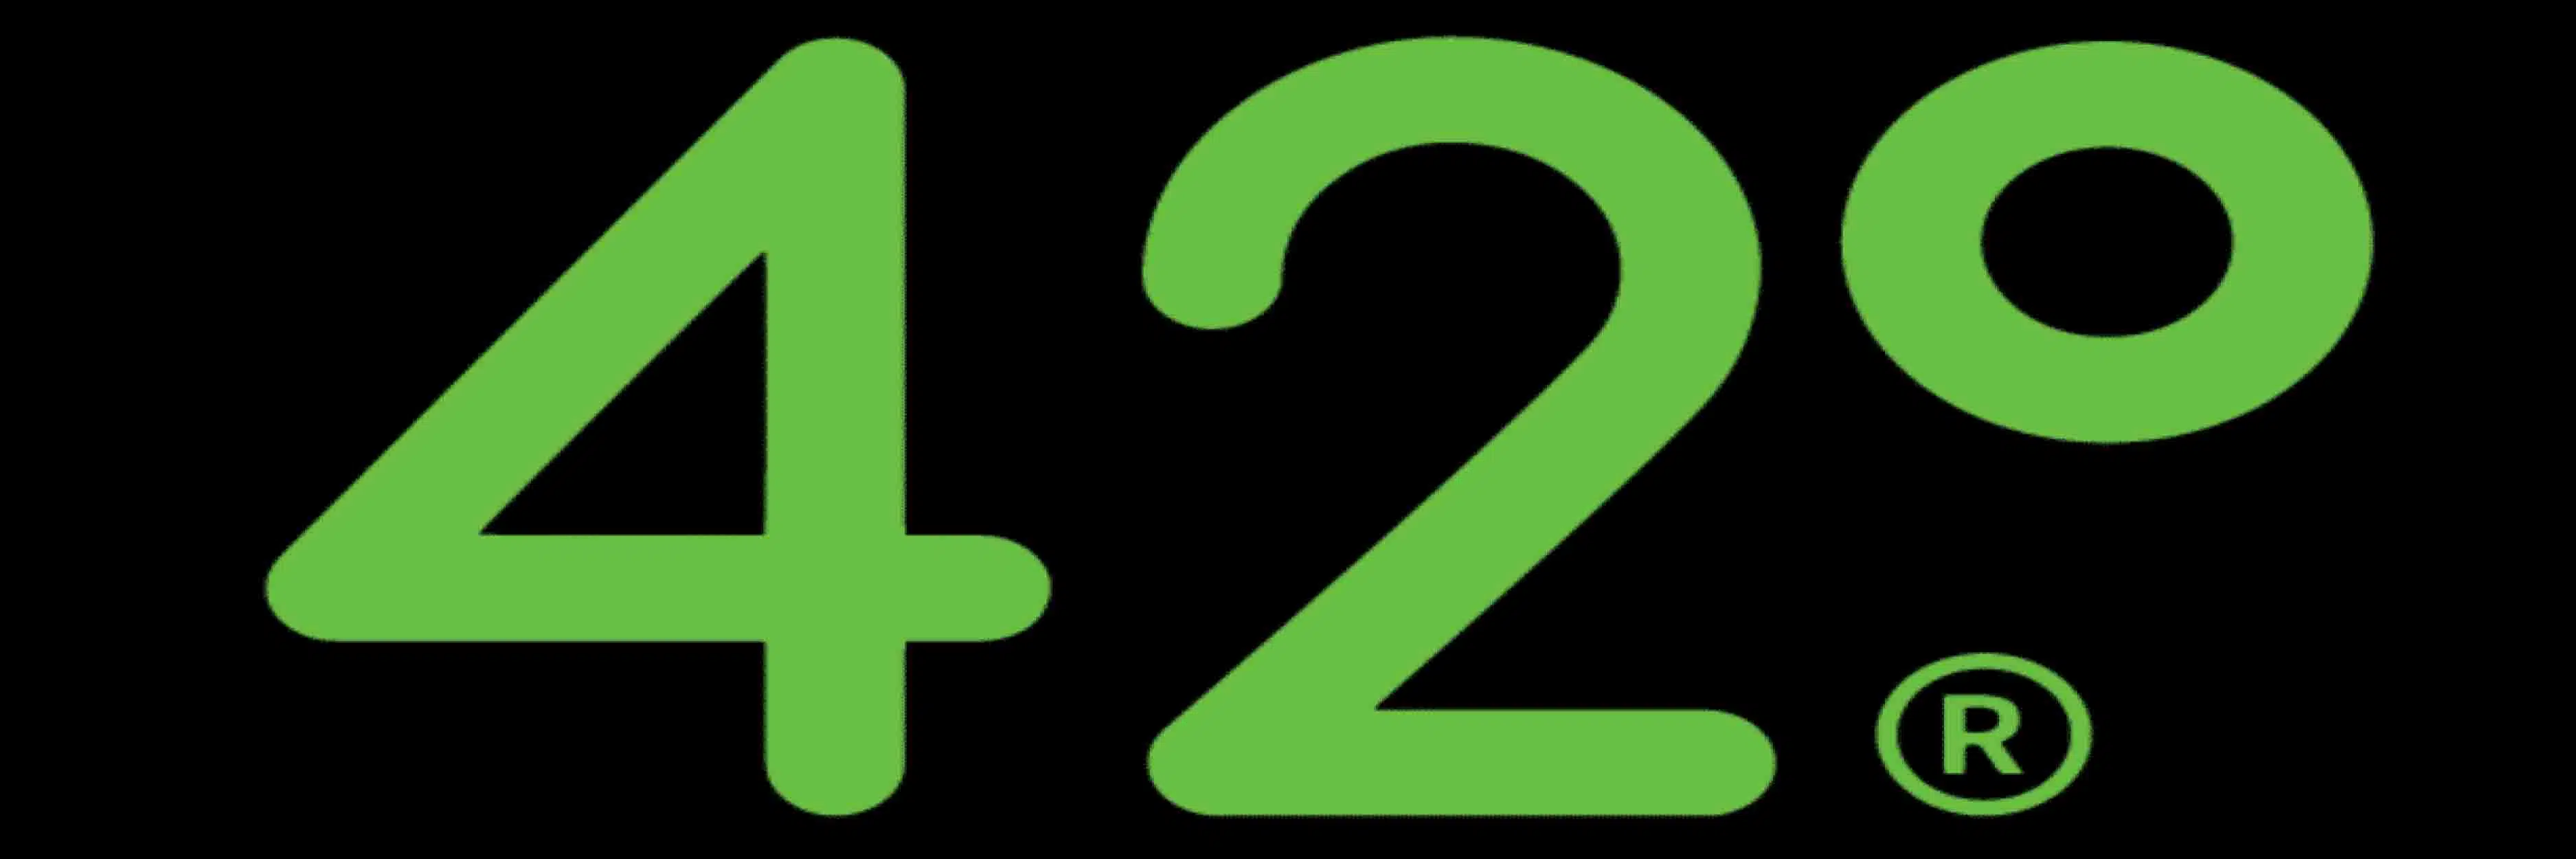 42-degrees-kratom-vendor-logo